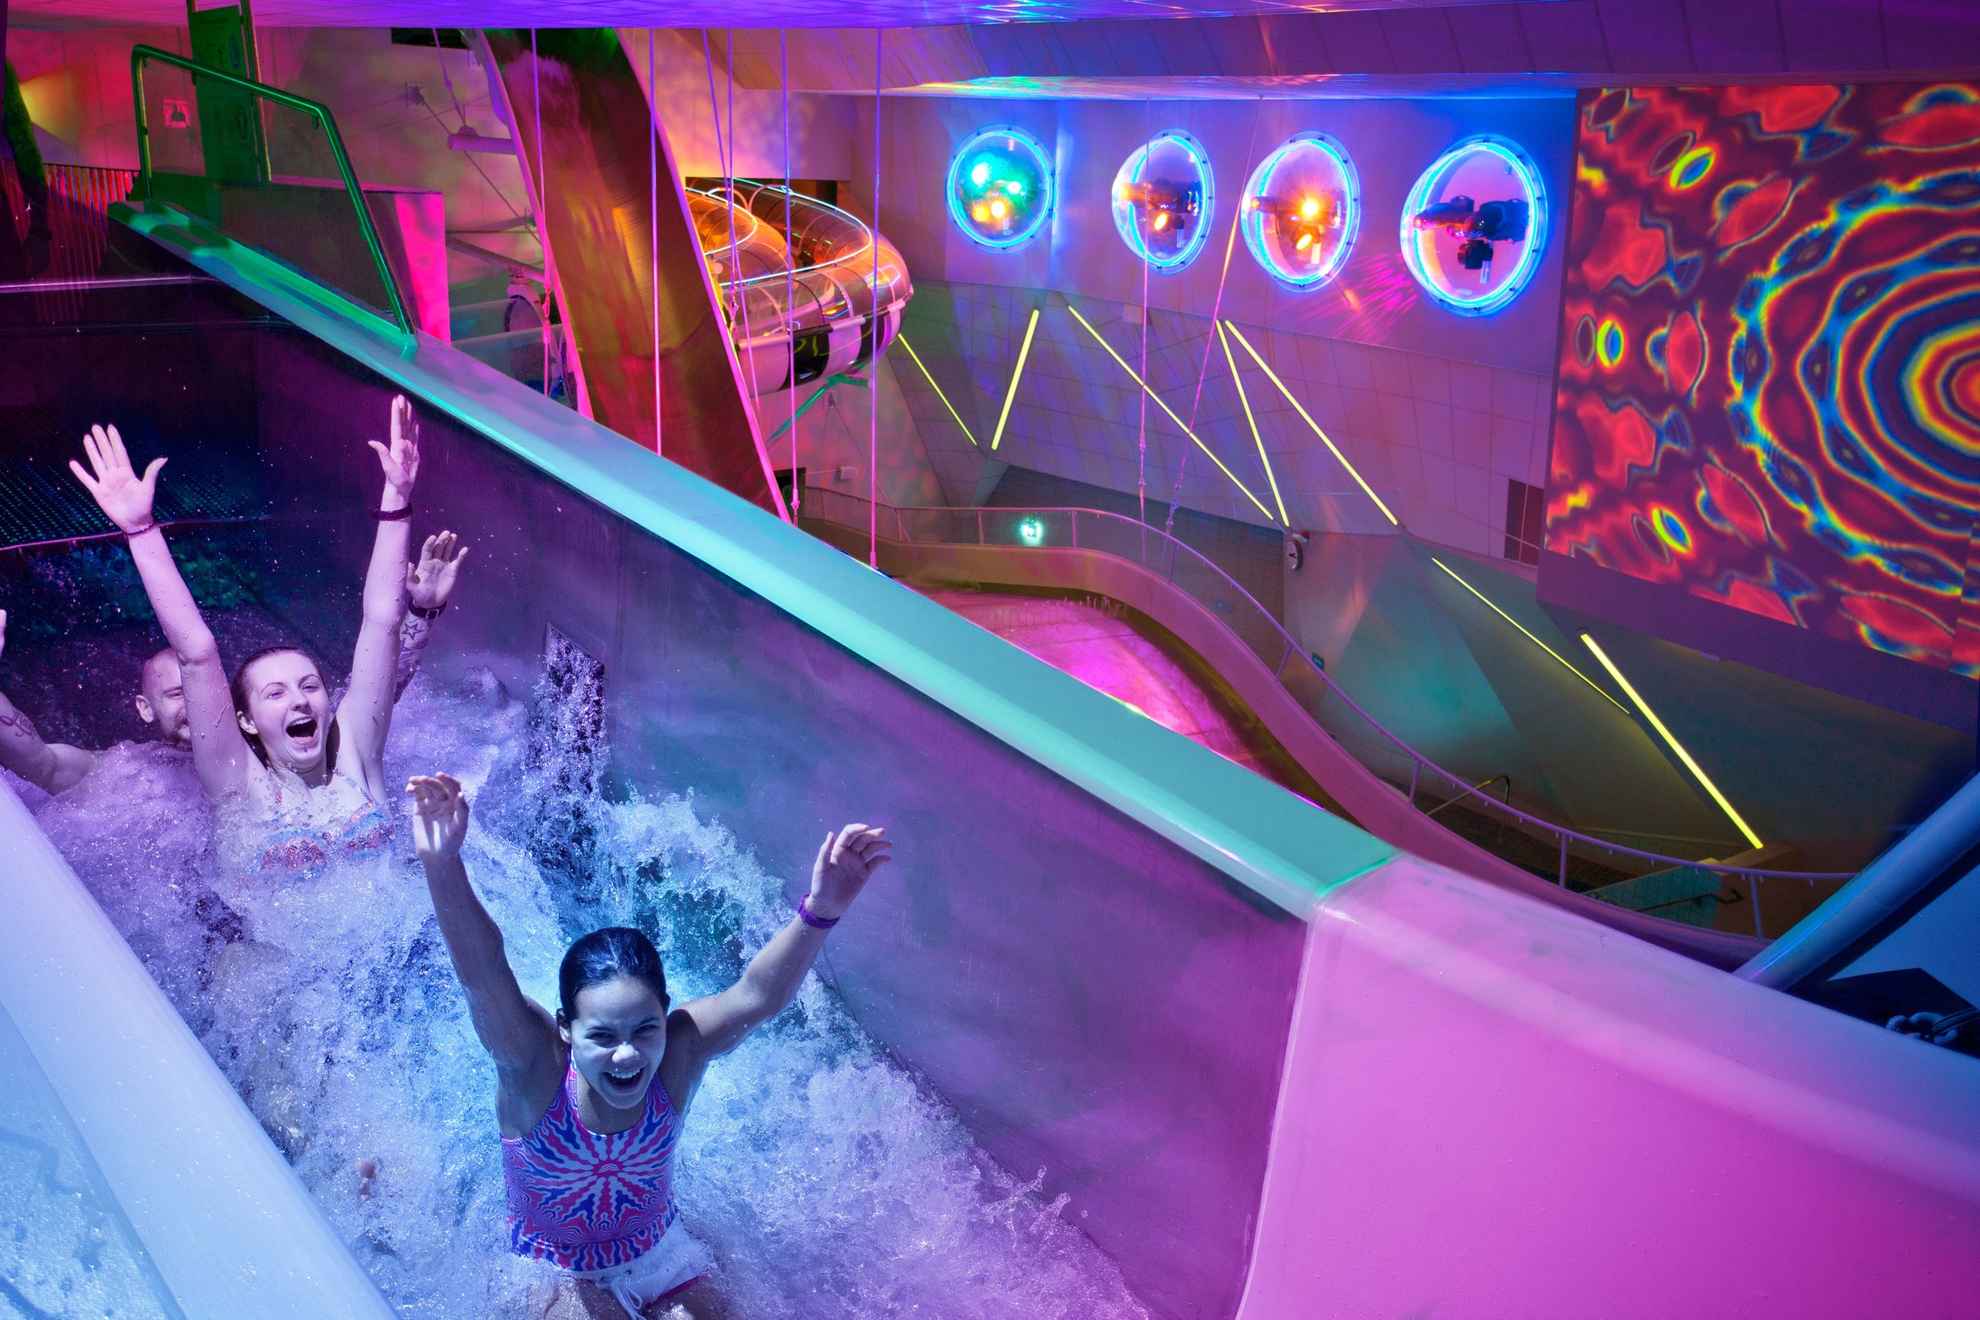 Trois personnes sourient et lèvent les bras en descendant un toboggan aquatique. L'endroit est principalement éclairé par des lumières violettes et des néons.